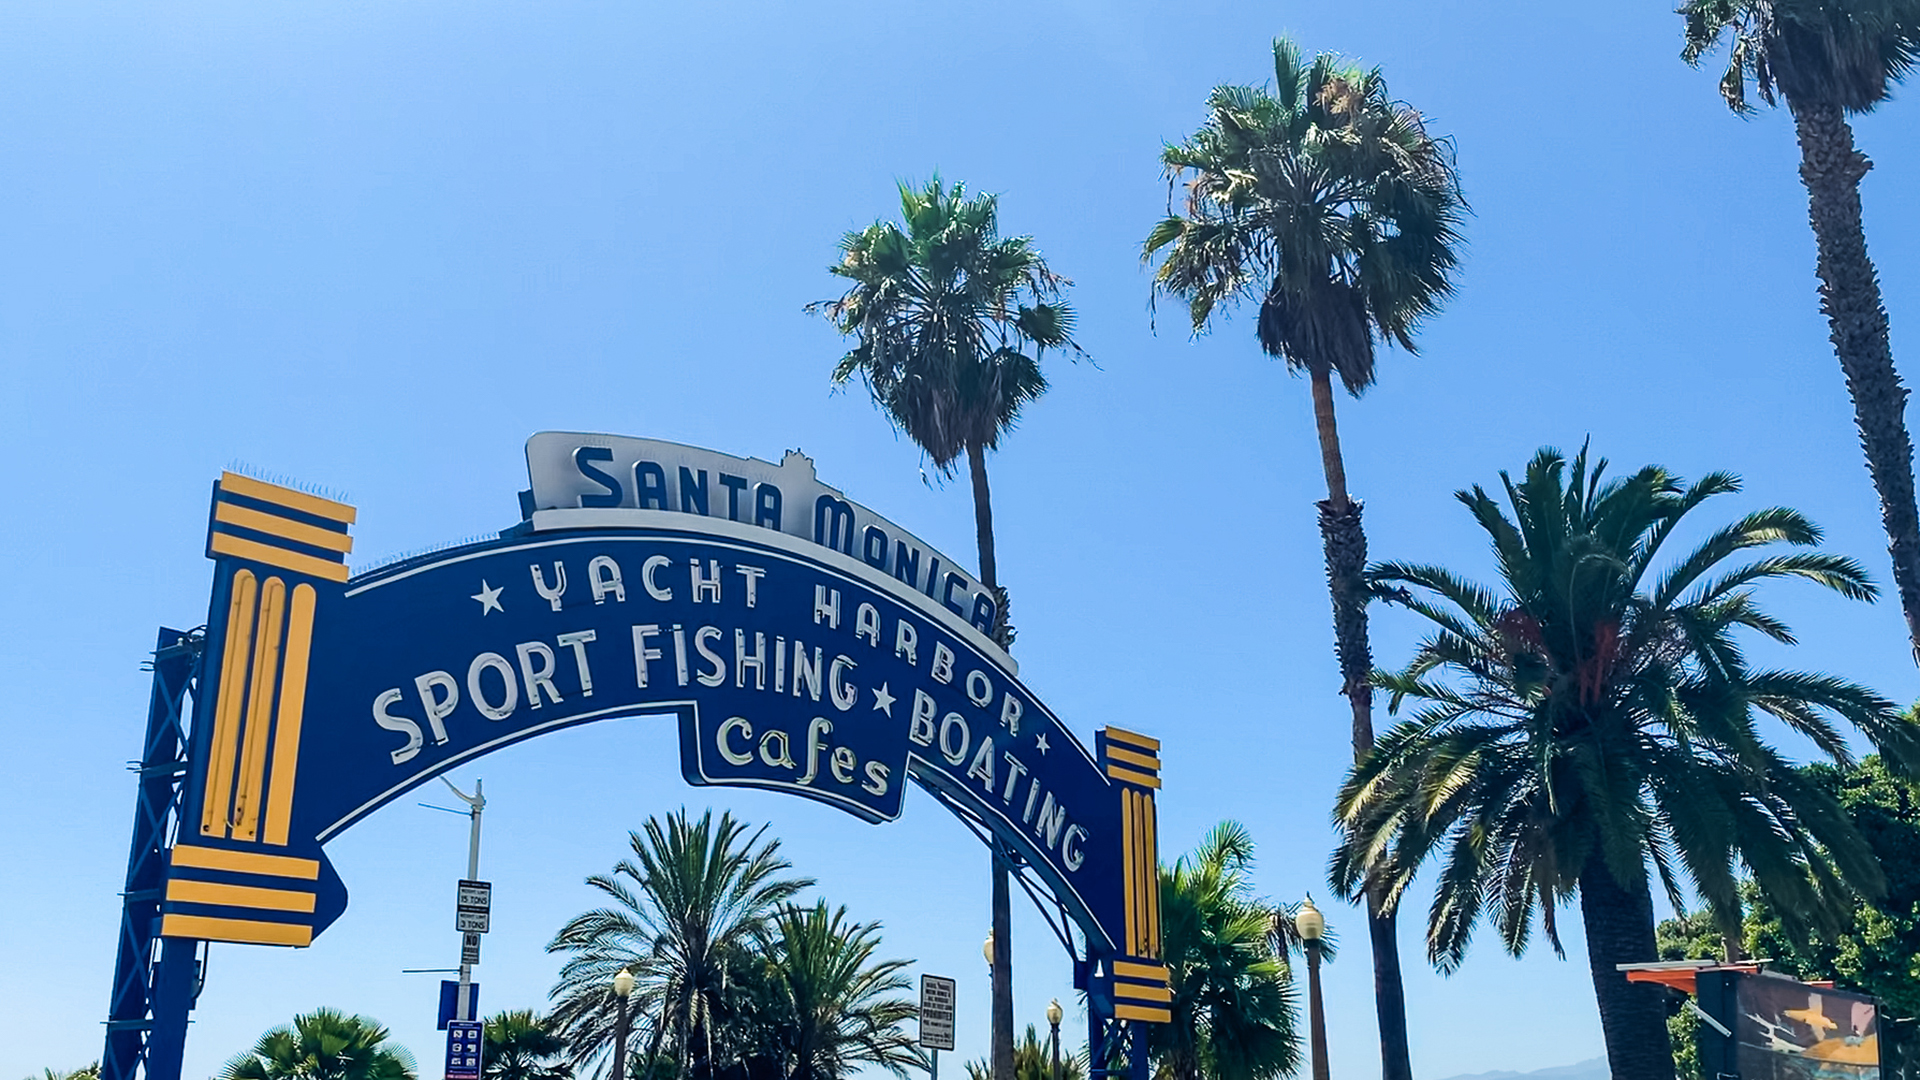 Santa Monica Pier entrance sign